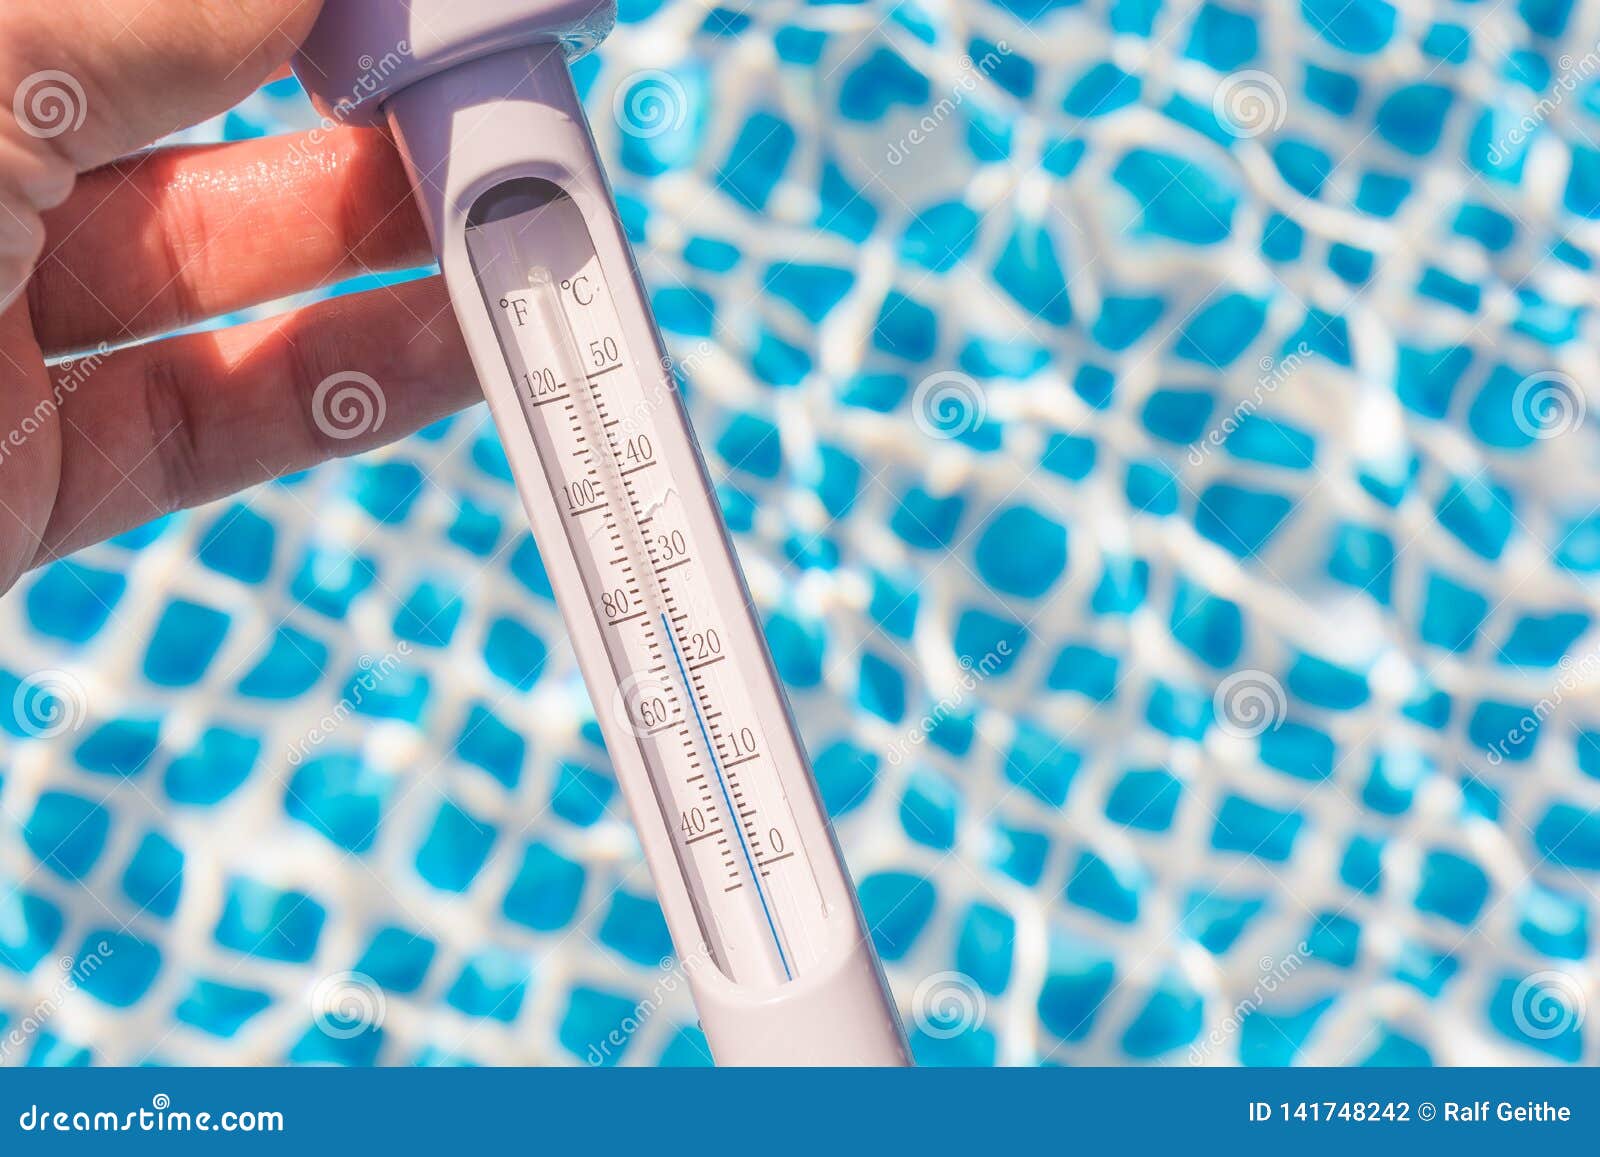 Температура после бассейна. Градусник для бассейна. Градусник для воды. Термометрия воды. Термометр для воды в бассейне.